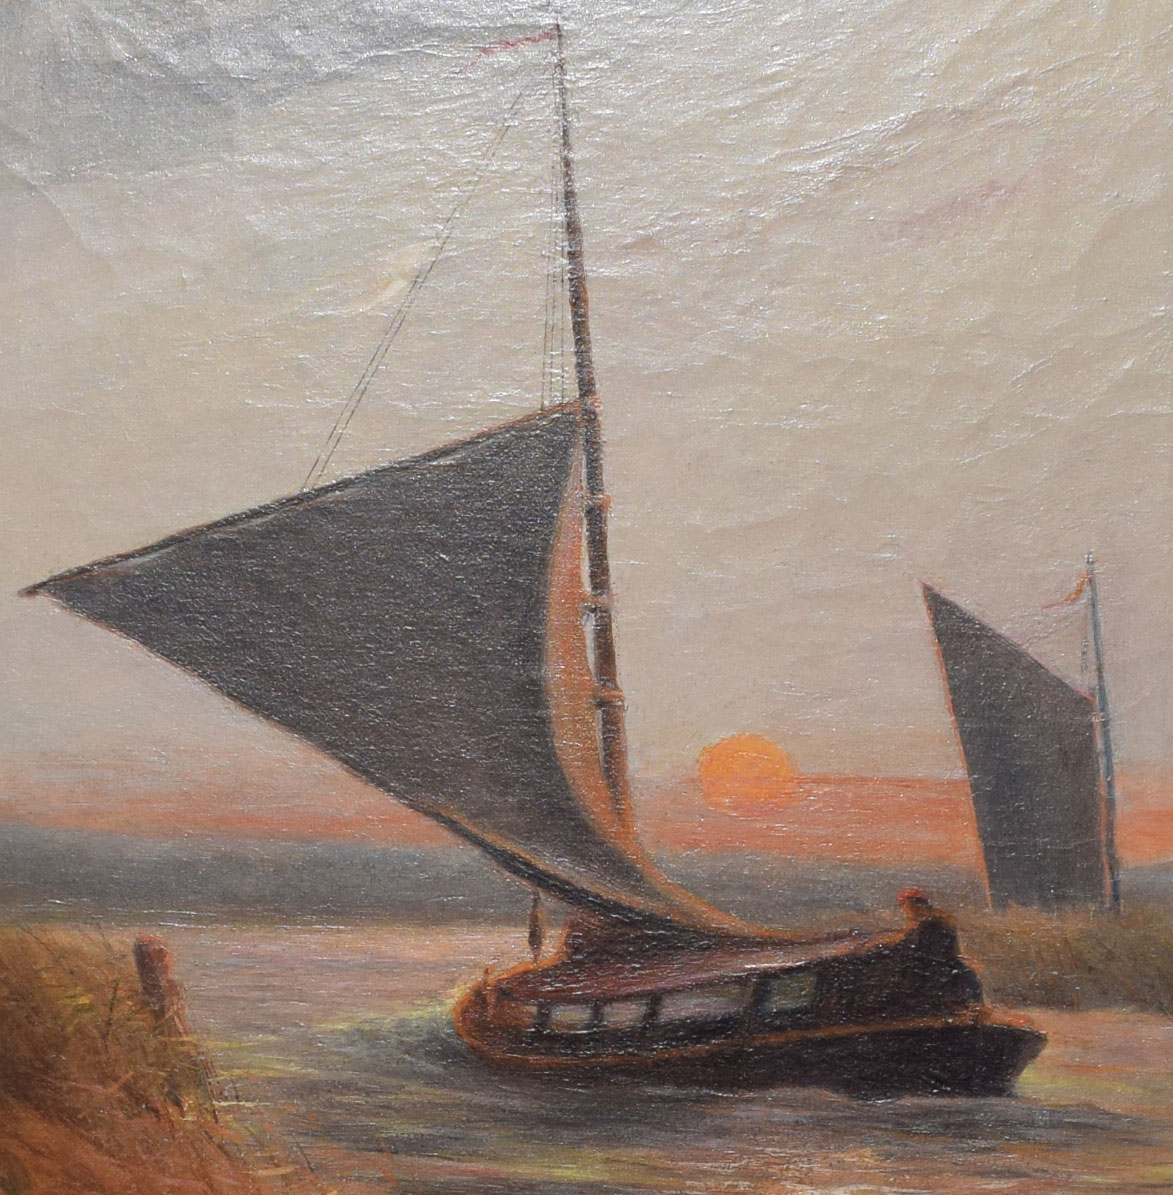 Stephen John Batchelder (1849-1932), Wherries at Sunset, oil on canvas, signed lower left, 47 x - Image 2 of 4